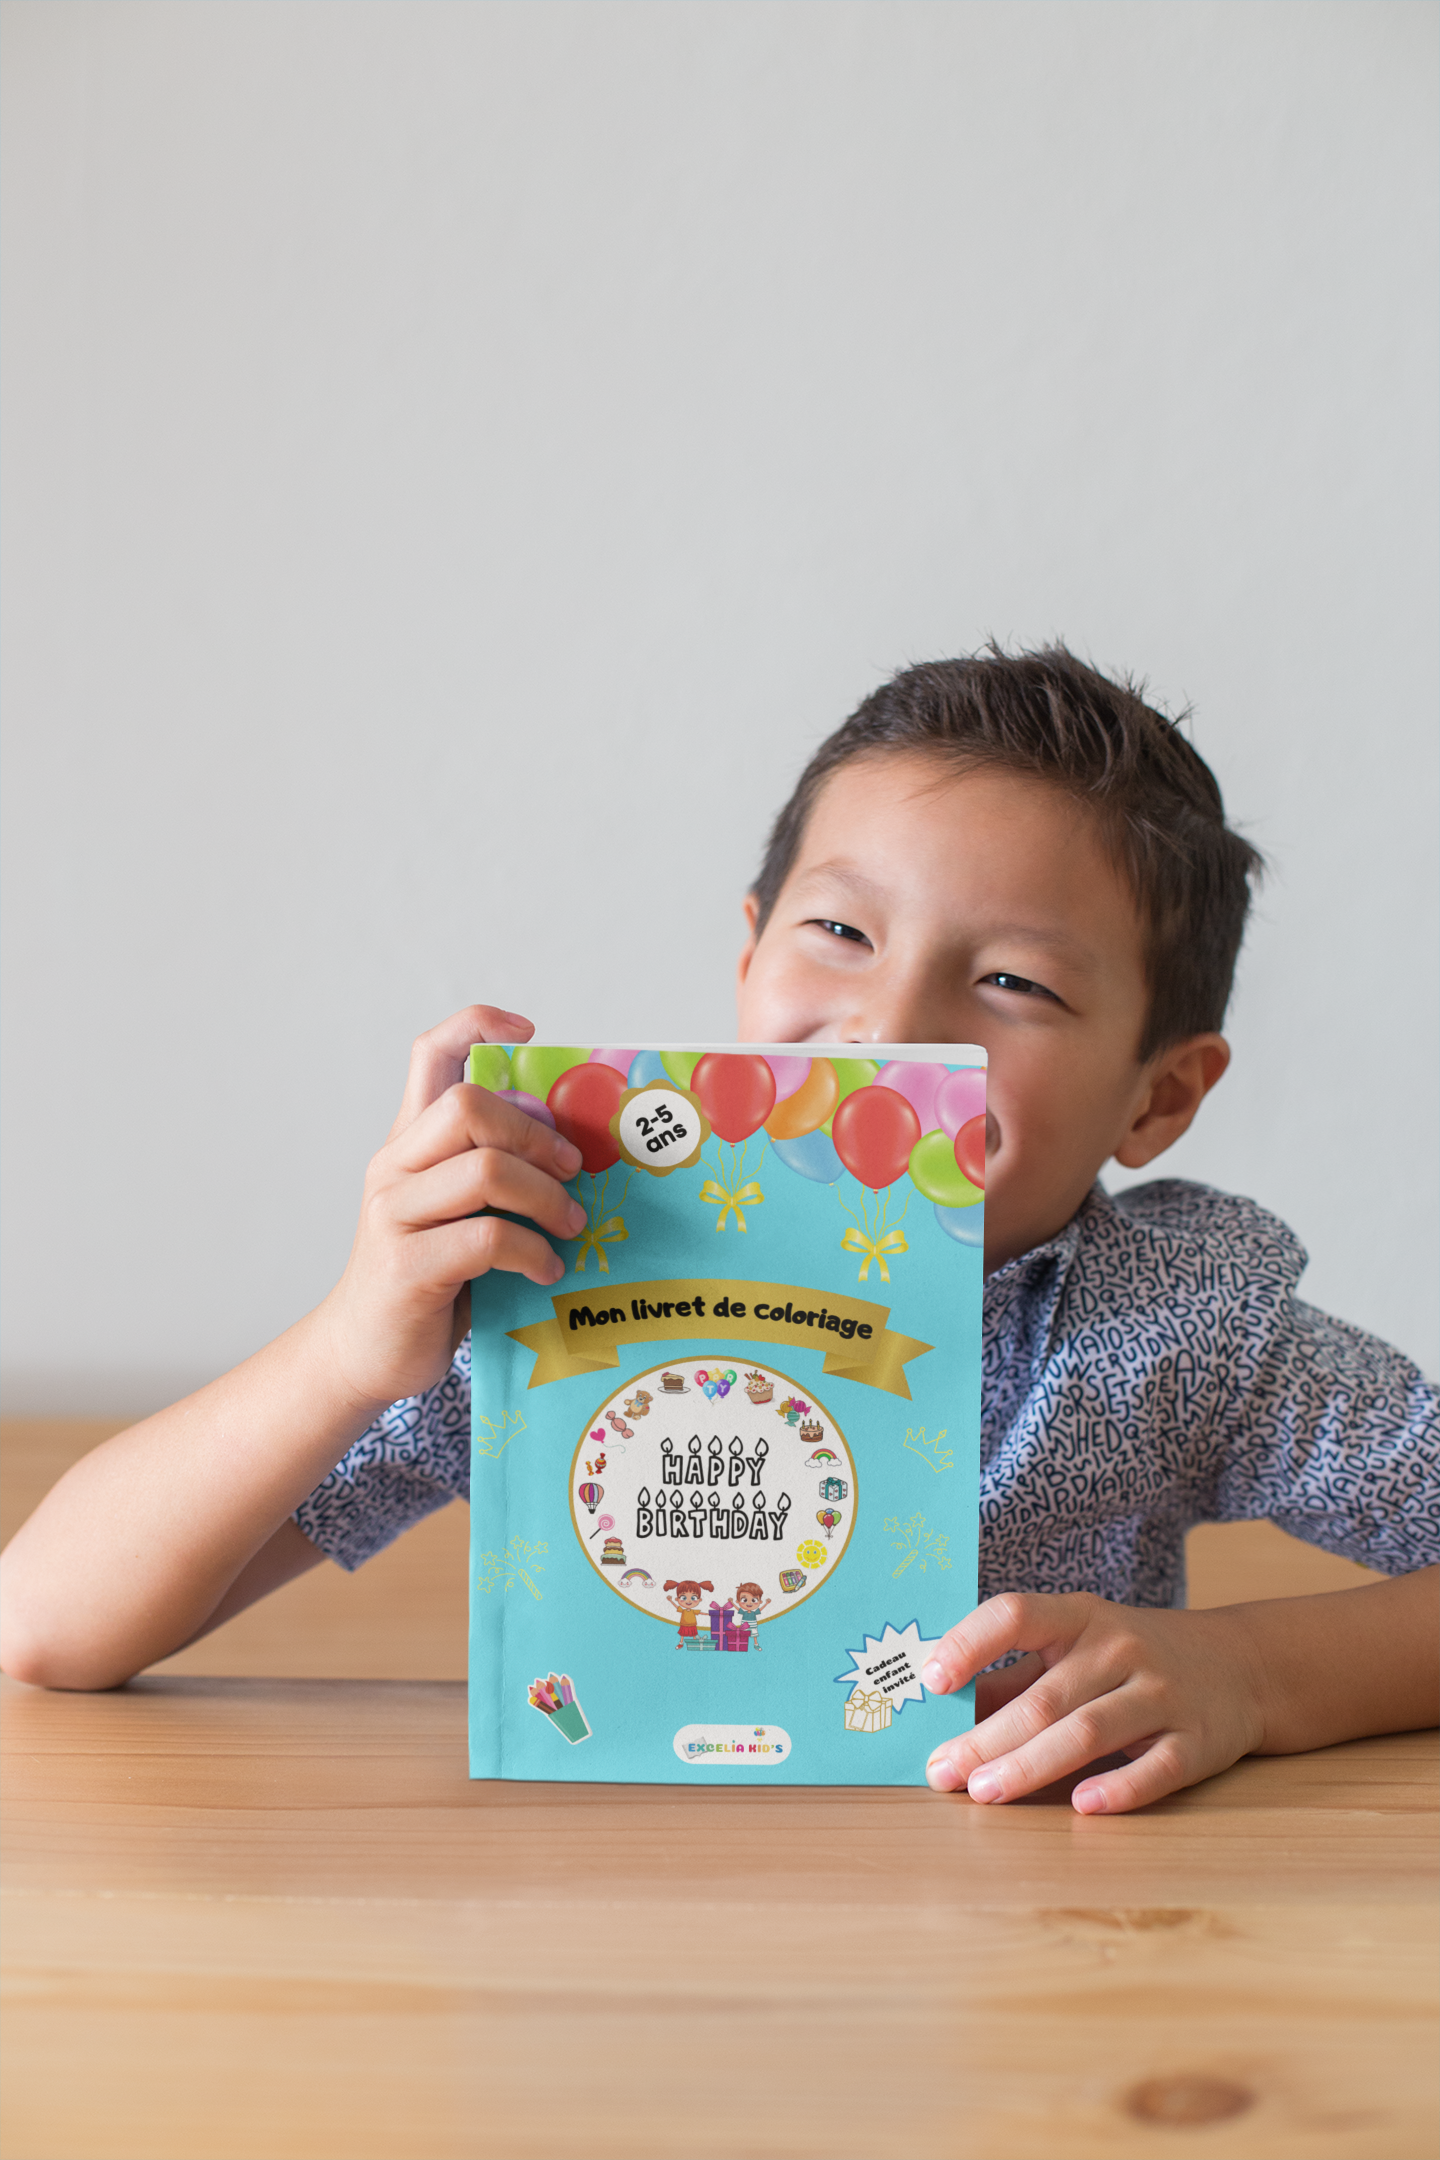 Livre de coloriage d'anniversaire pour les enfants - Livret d'activités à colorier – Beau cadeau pour enfants invités de 2 à 5 ans